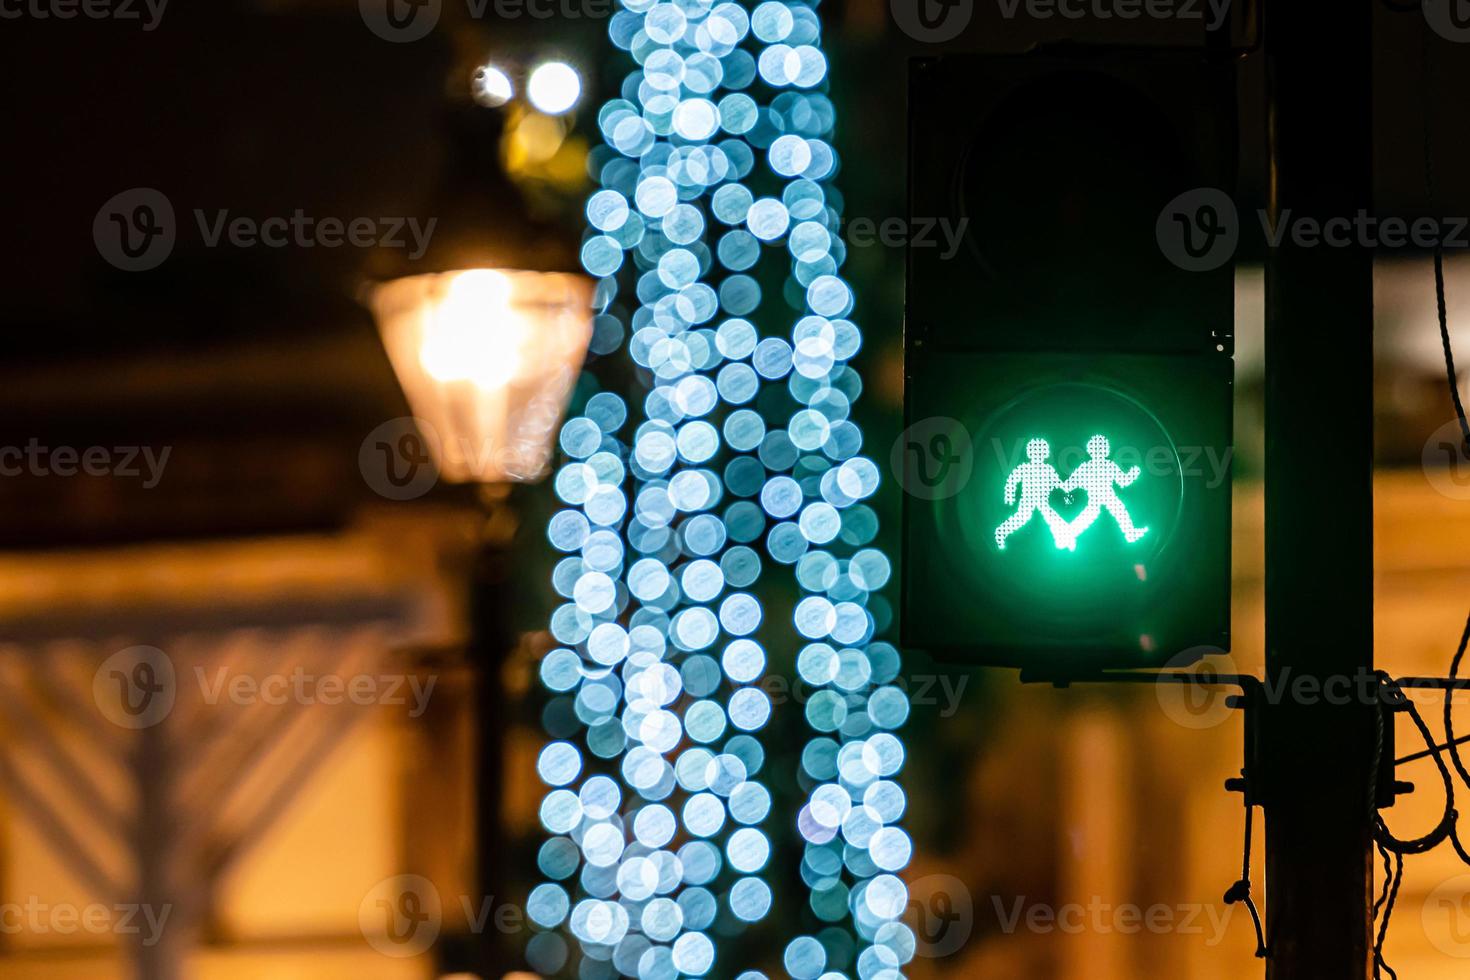 semáforo para pedestres com luz verde e luzes desfocadas da árvore de natal foto